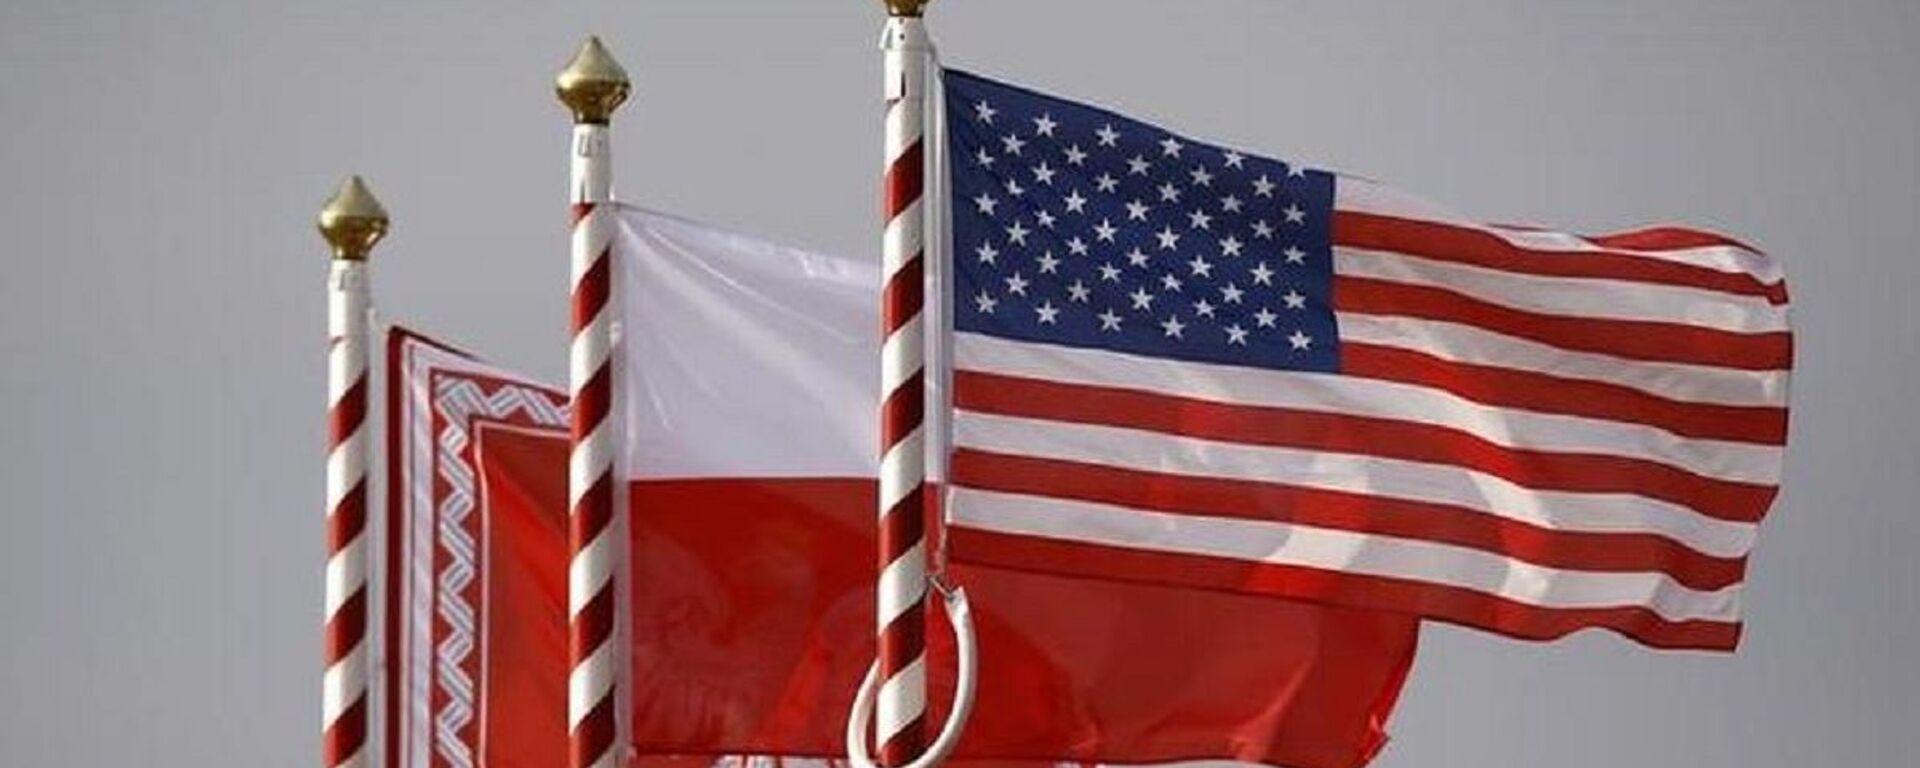 ABD ile Polonya bayrakları - Sputnik Türkiye, 1920, 19.10.2020